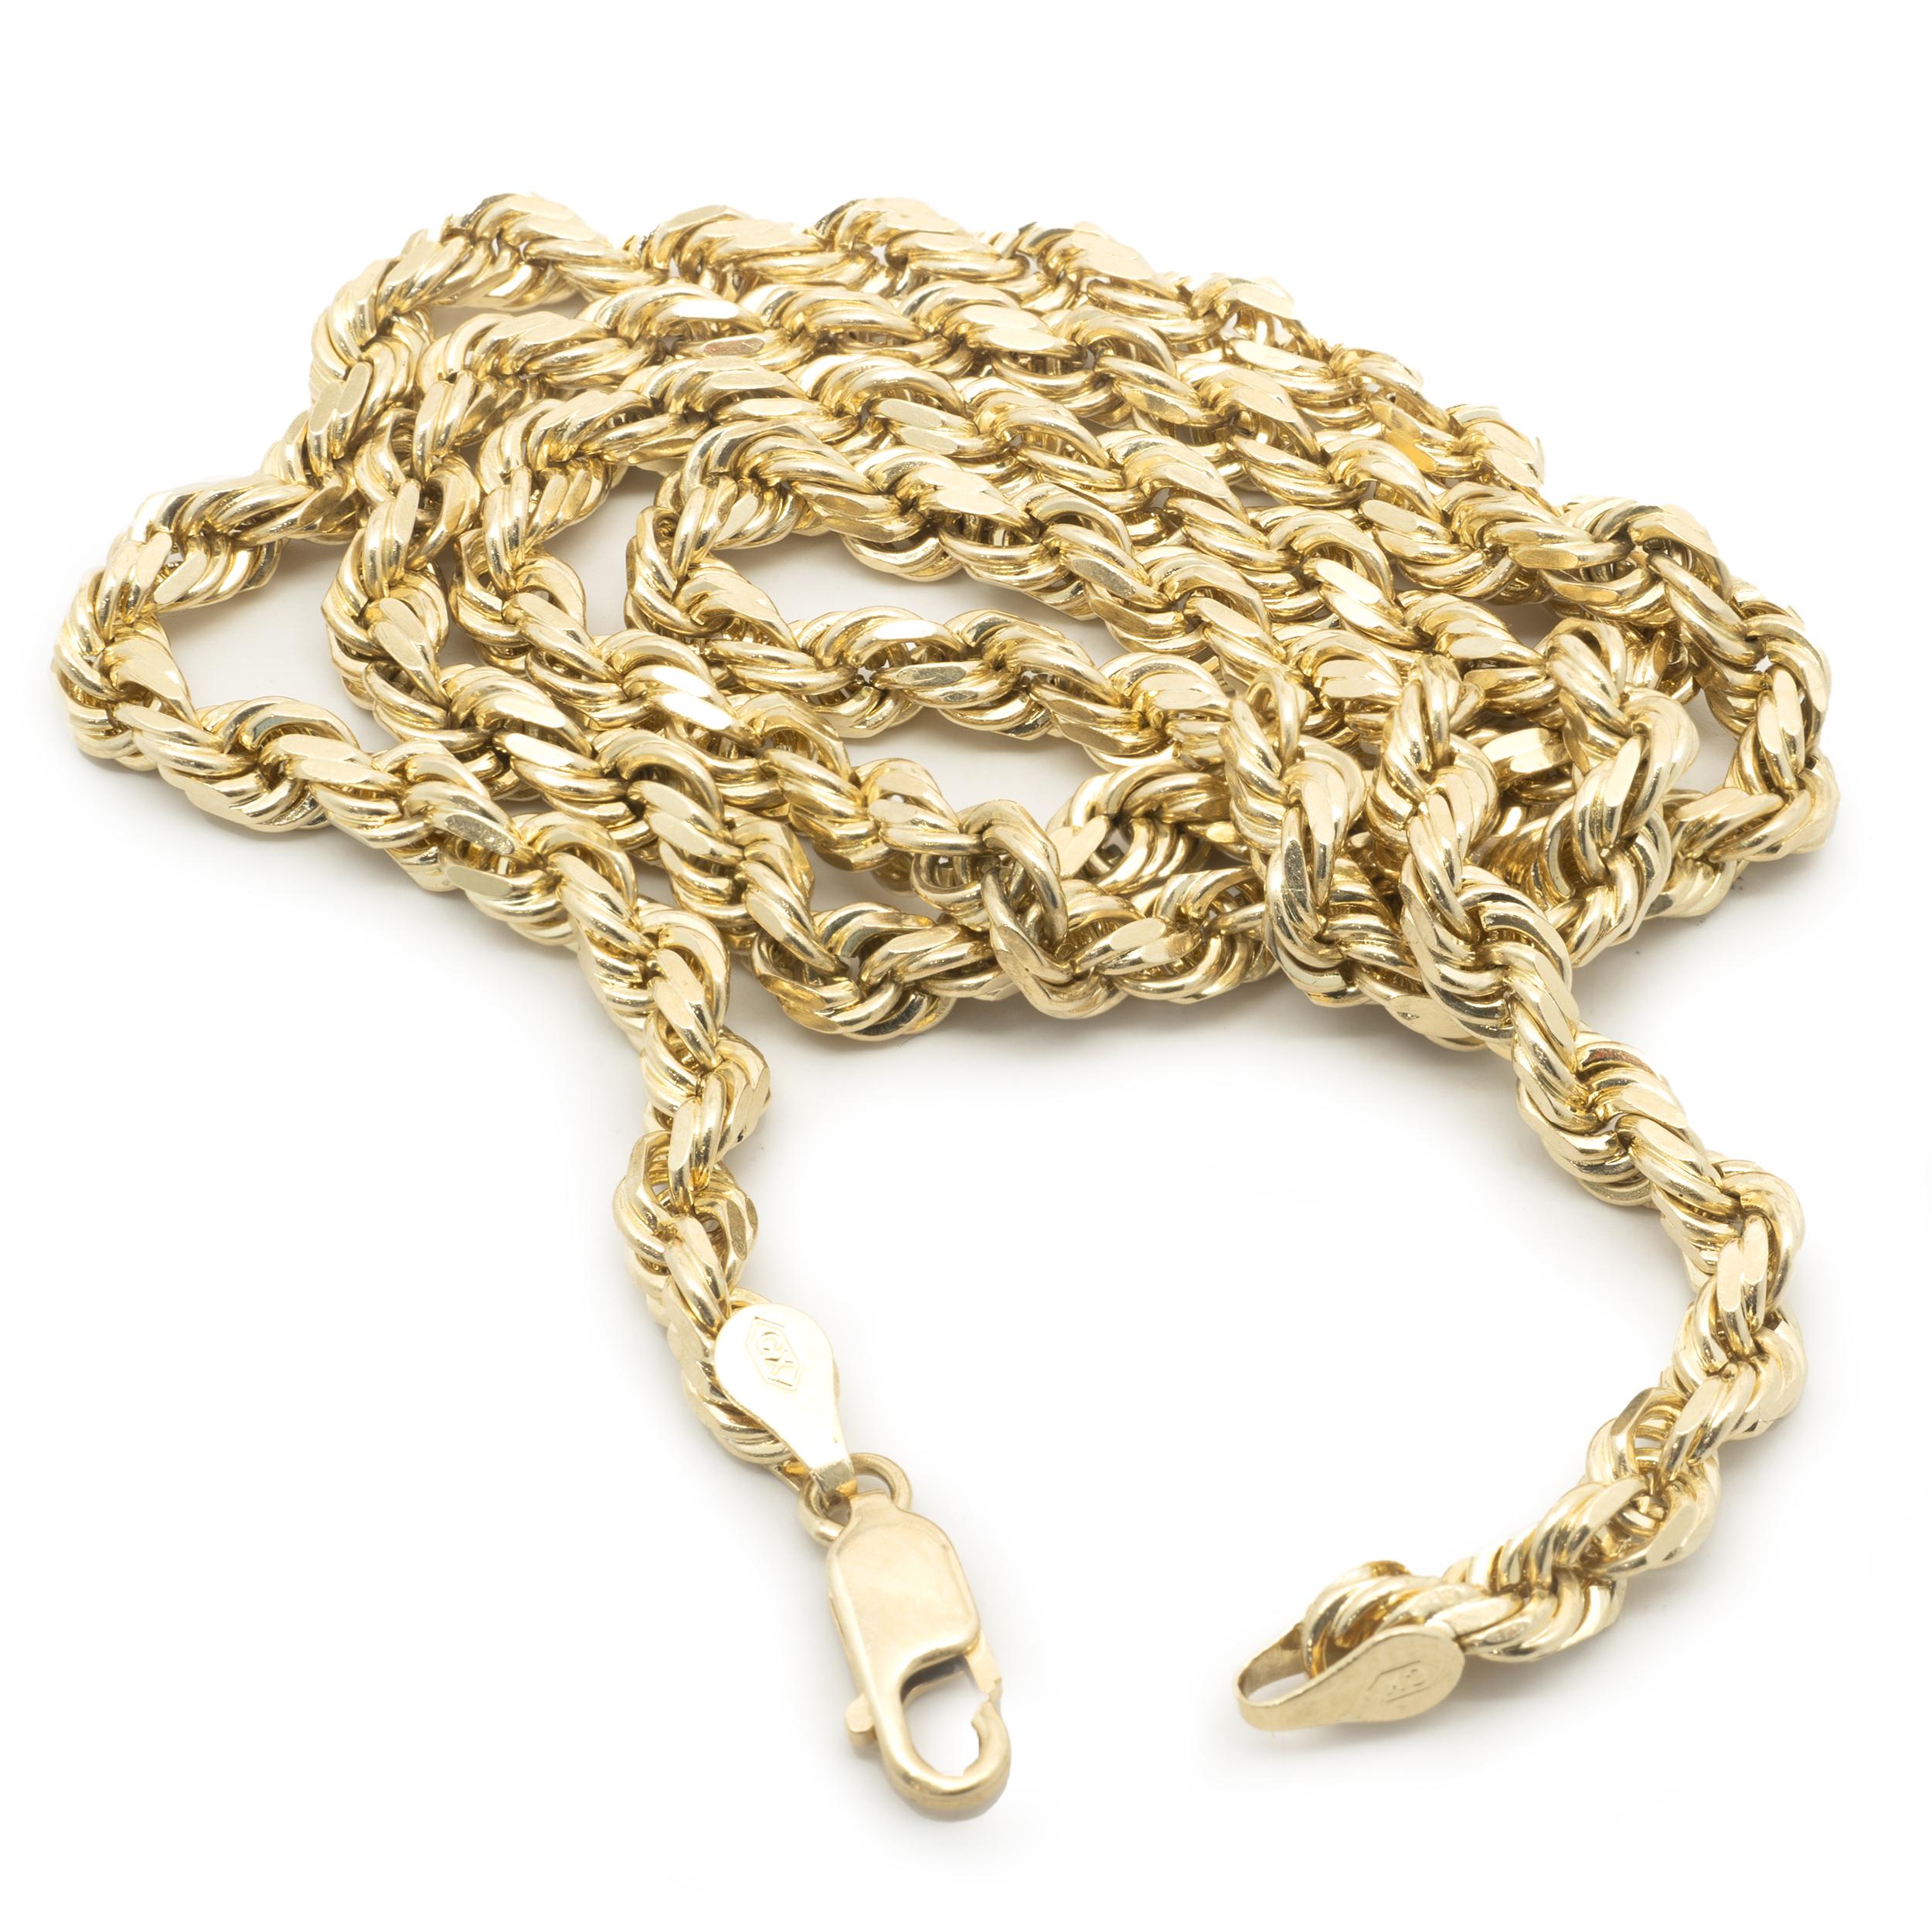 Material: 10K Gelbgold
Abmessungen: Halskette misst 21 Zoll in der Länge, 4,50 mm breit
Gewicht: 32,55 Gramm
